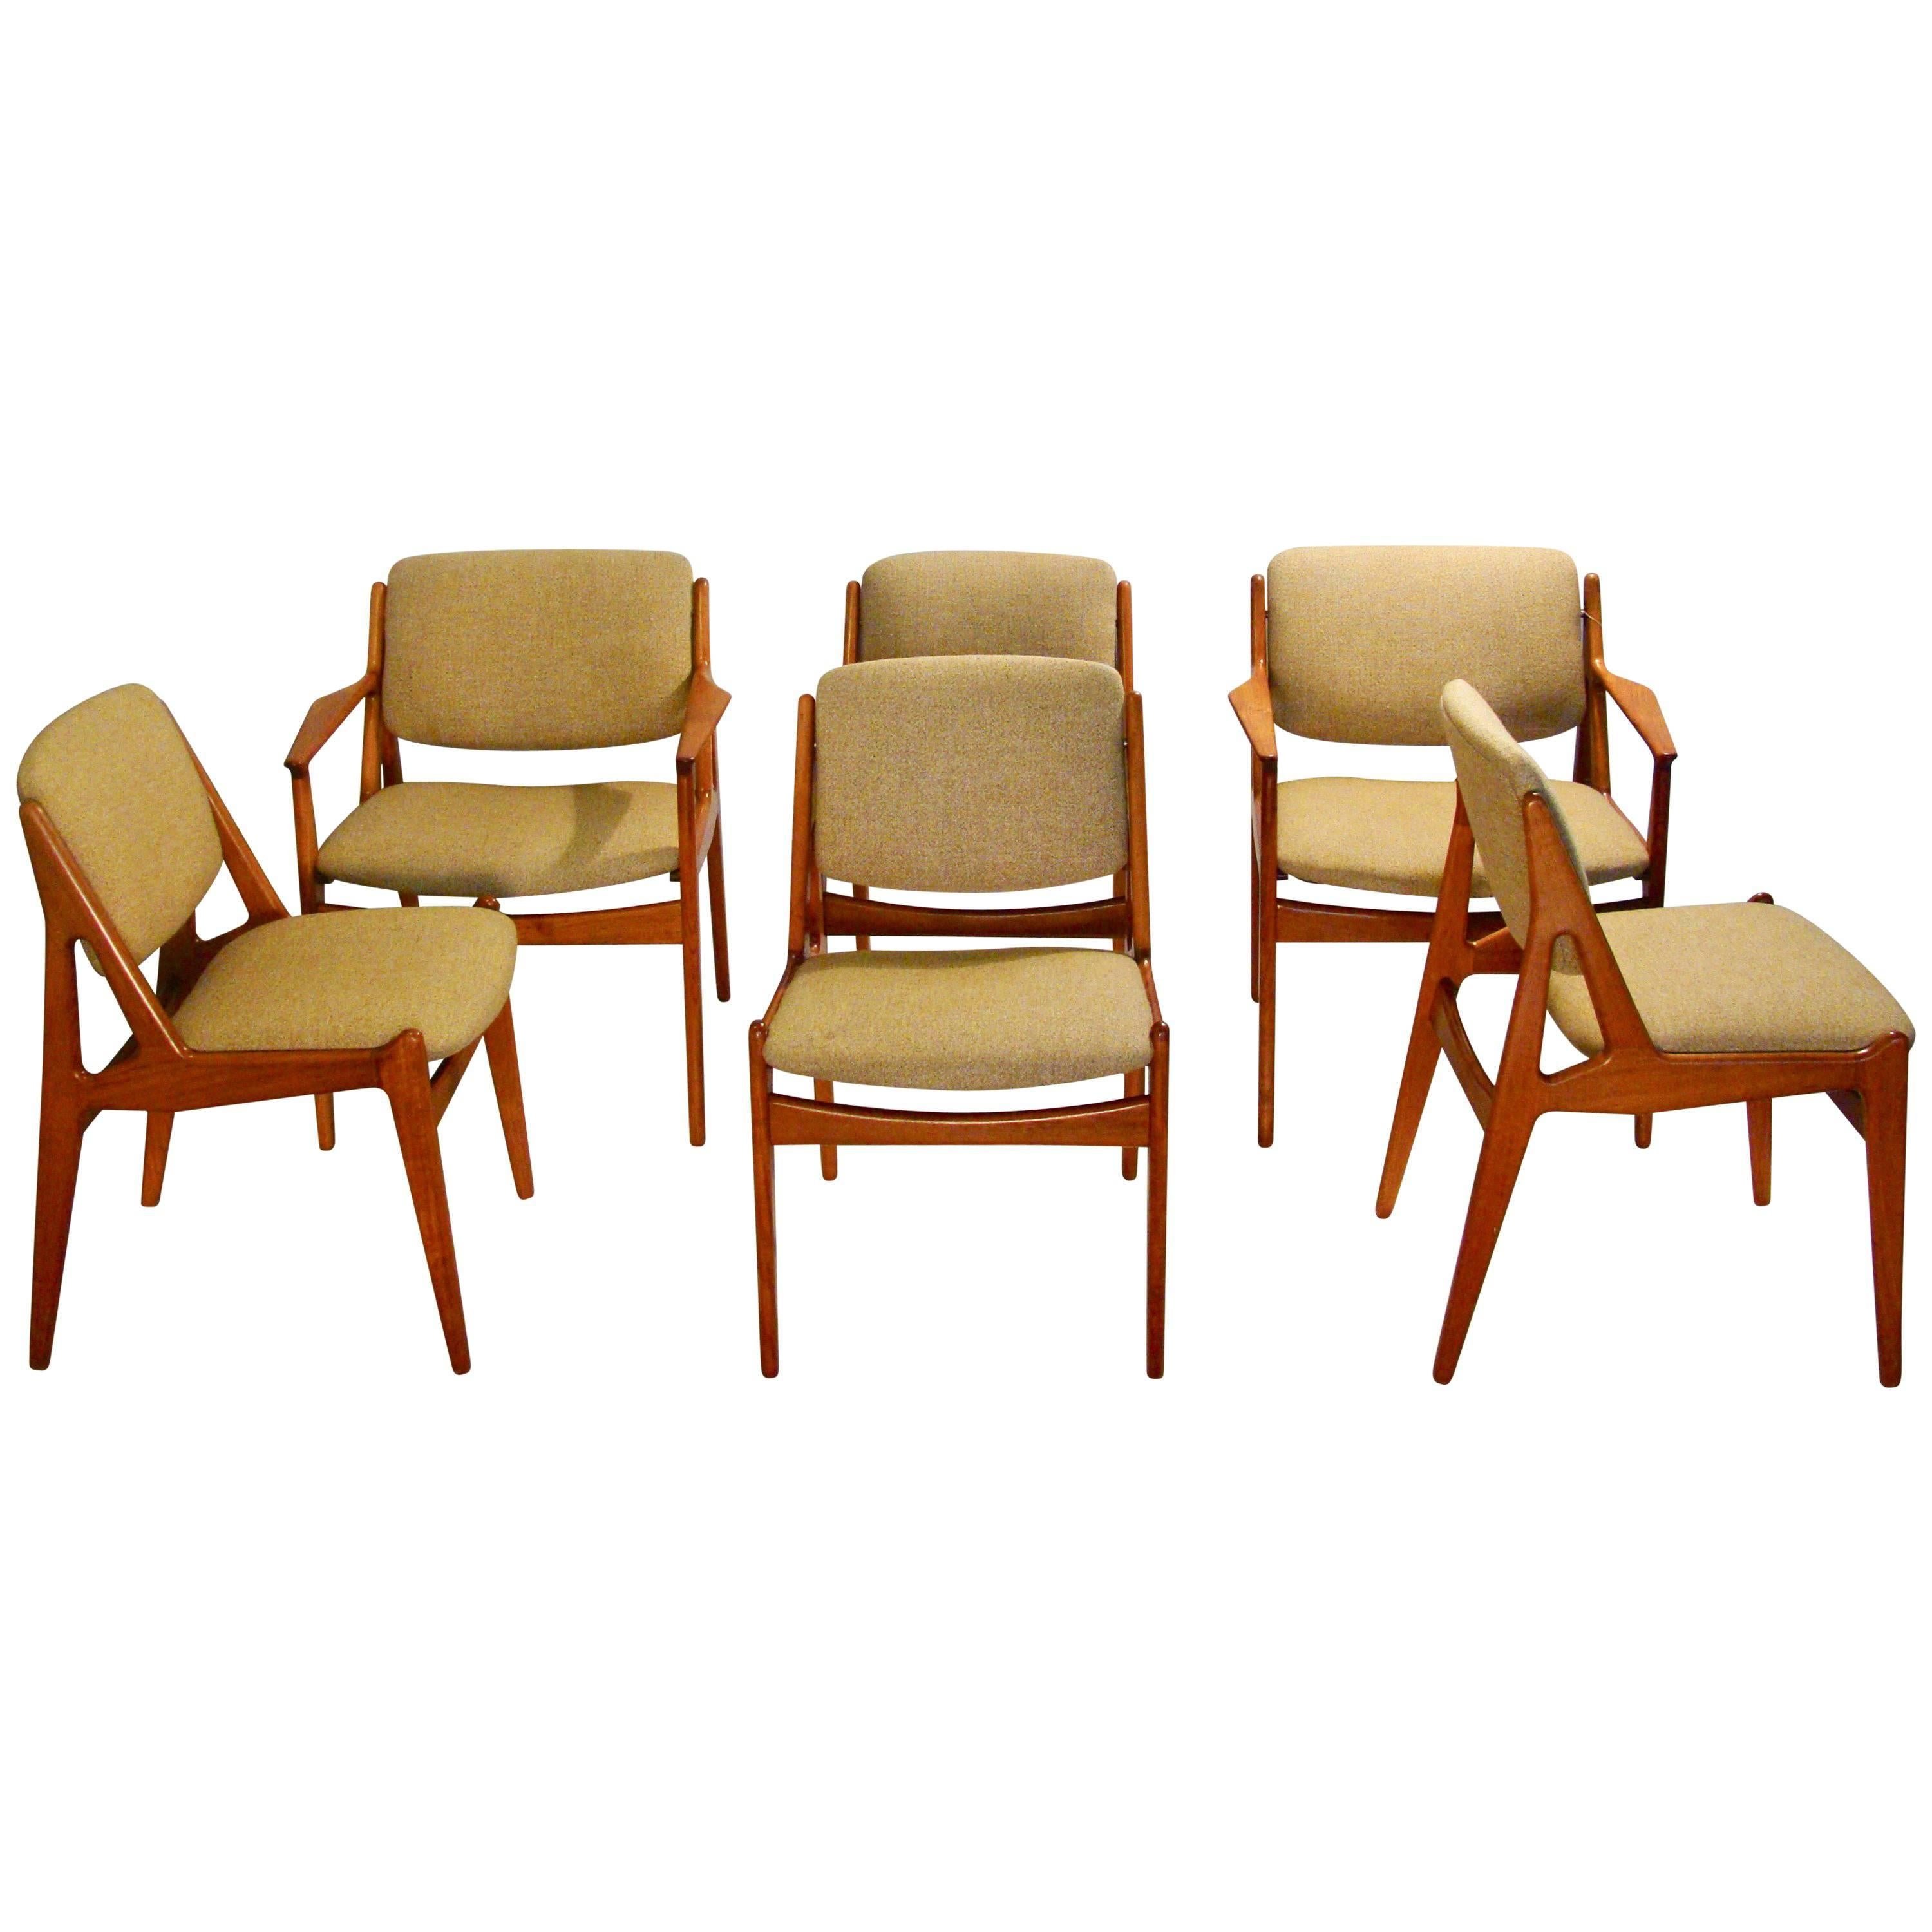 Six Arne Vodder "Ella" Tilt-Back Dining Chairs